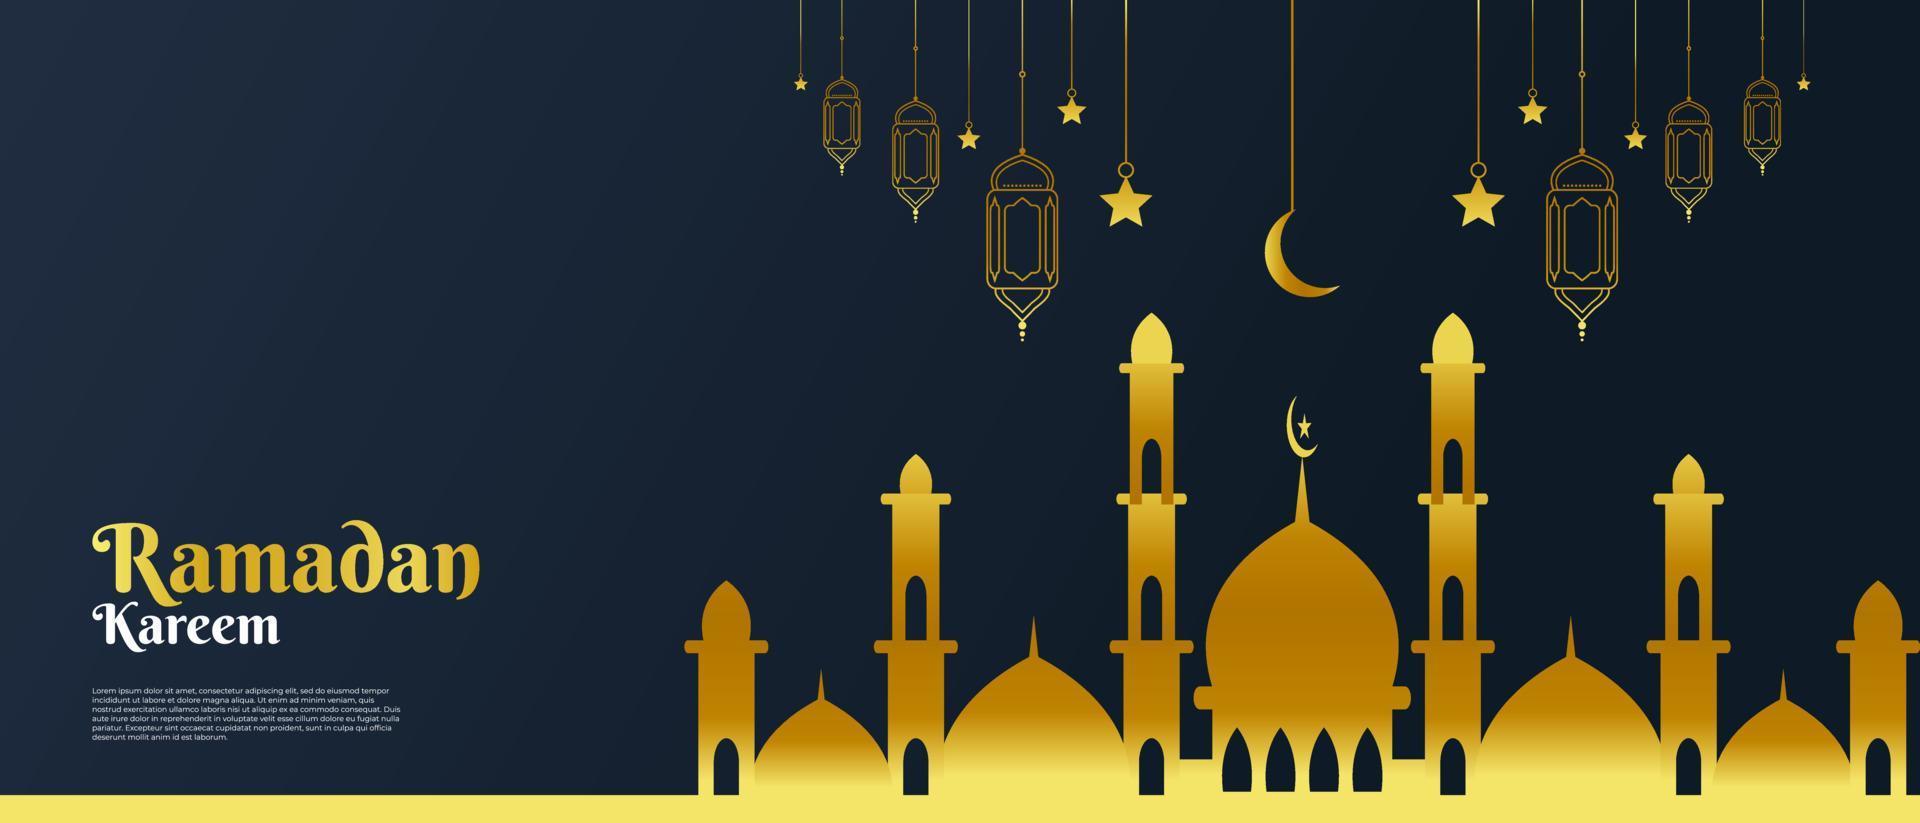 ramadan kareem ou eid mubarak design de fundo islâmico para cartão de saudação, banner, evento ou cartaz vetor